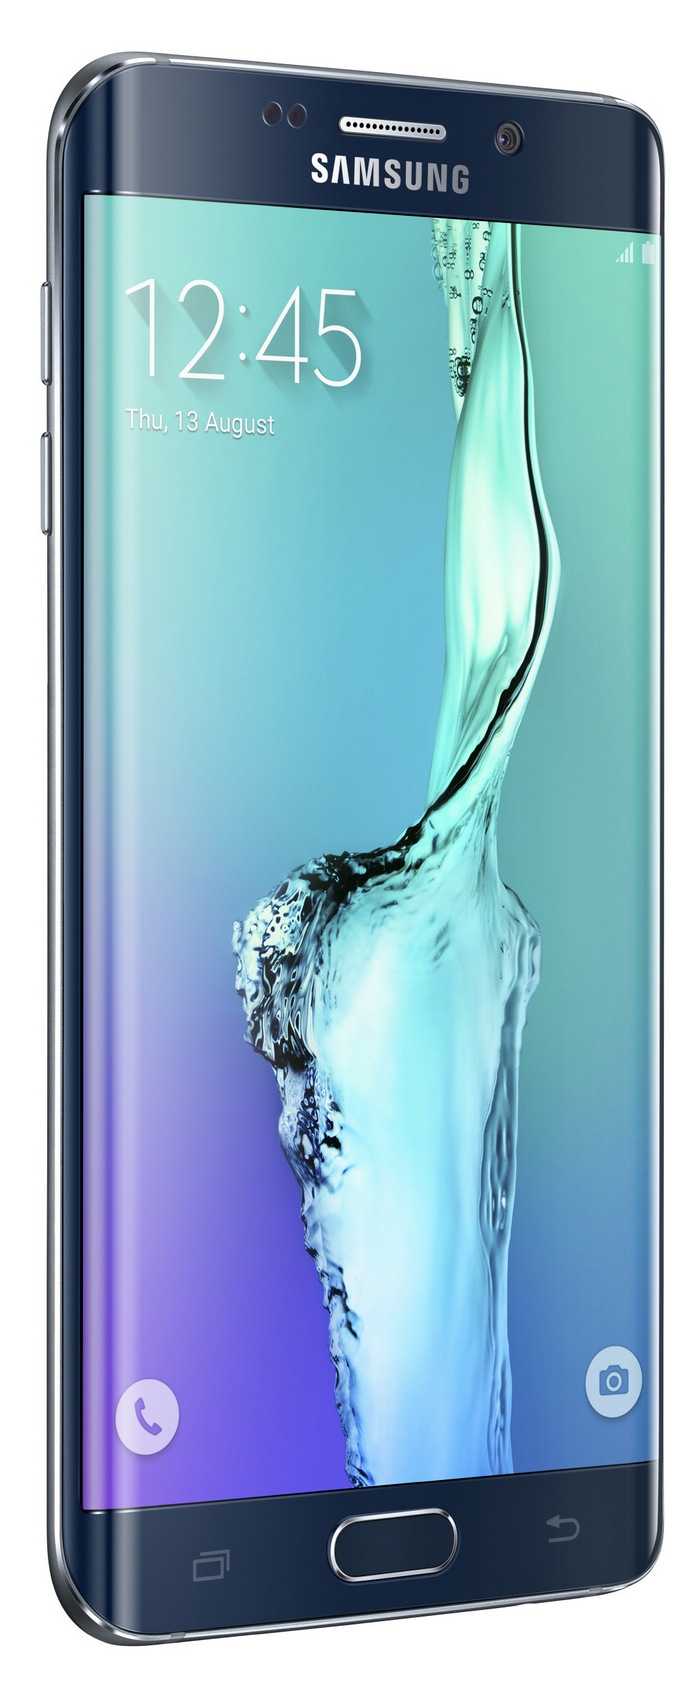 Samsung Galaxy S6 podría tener sólo una versión con pantalla curva